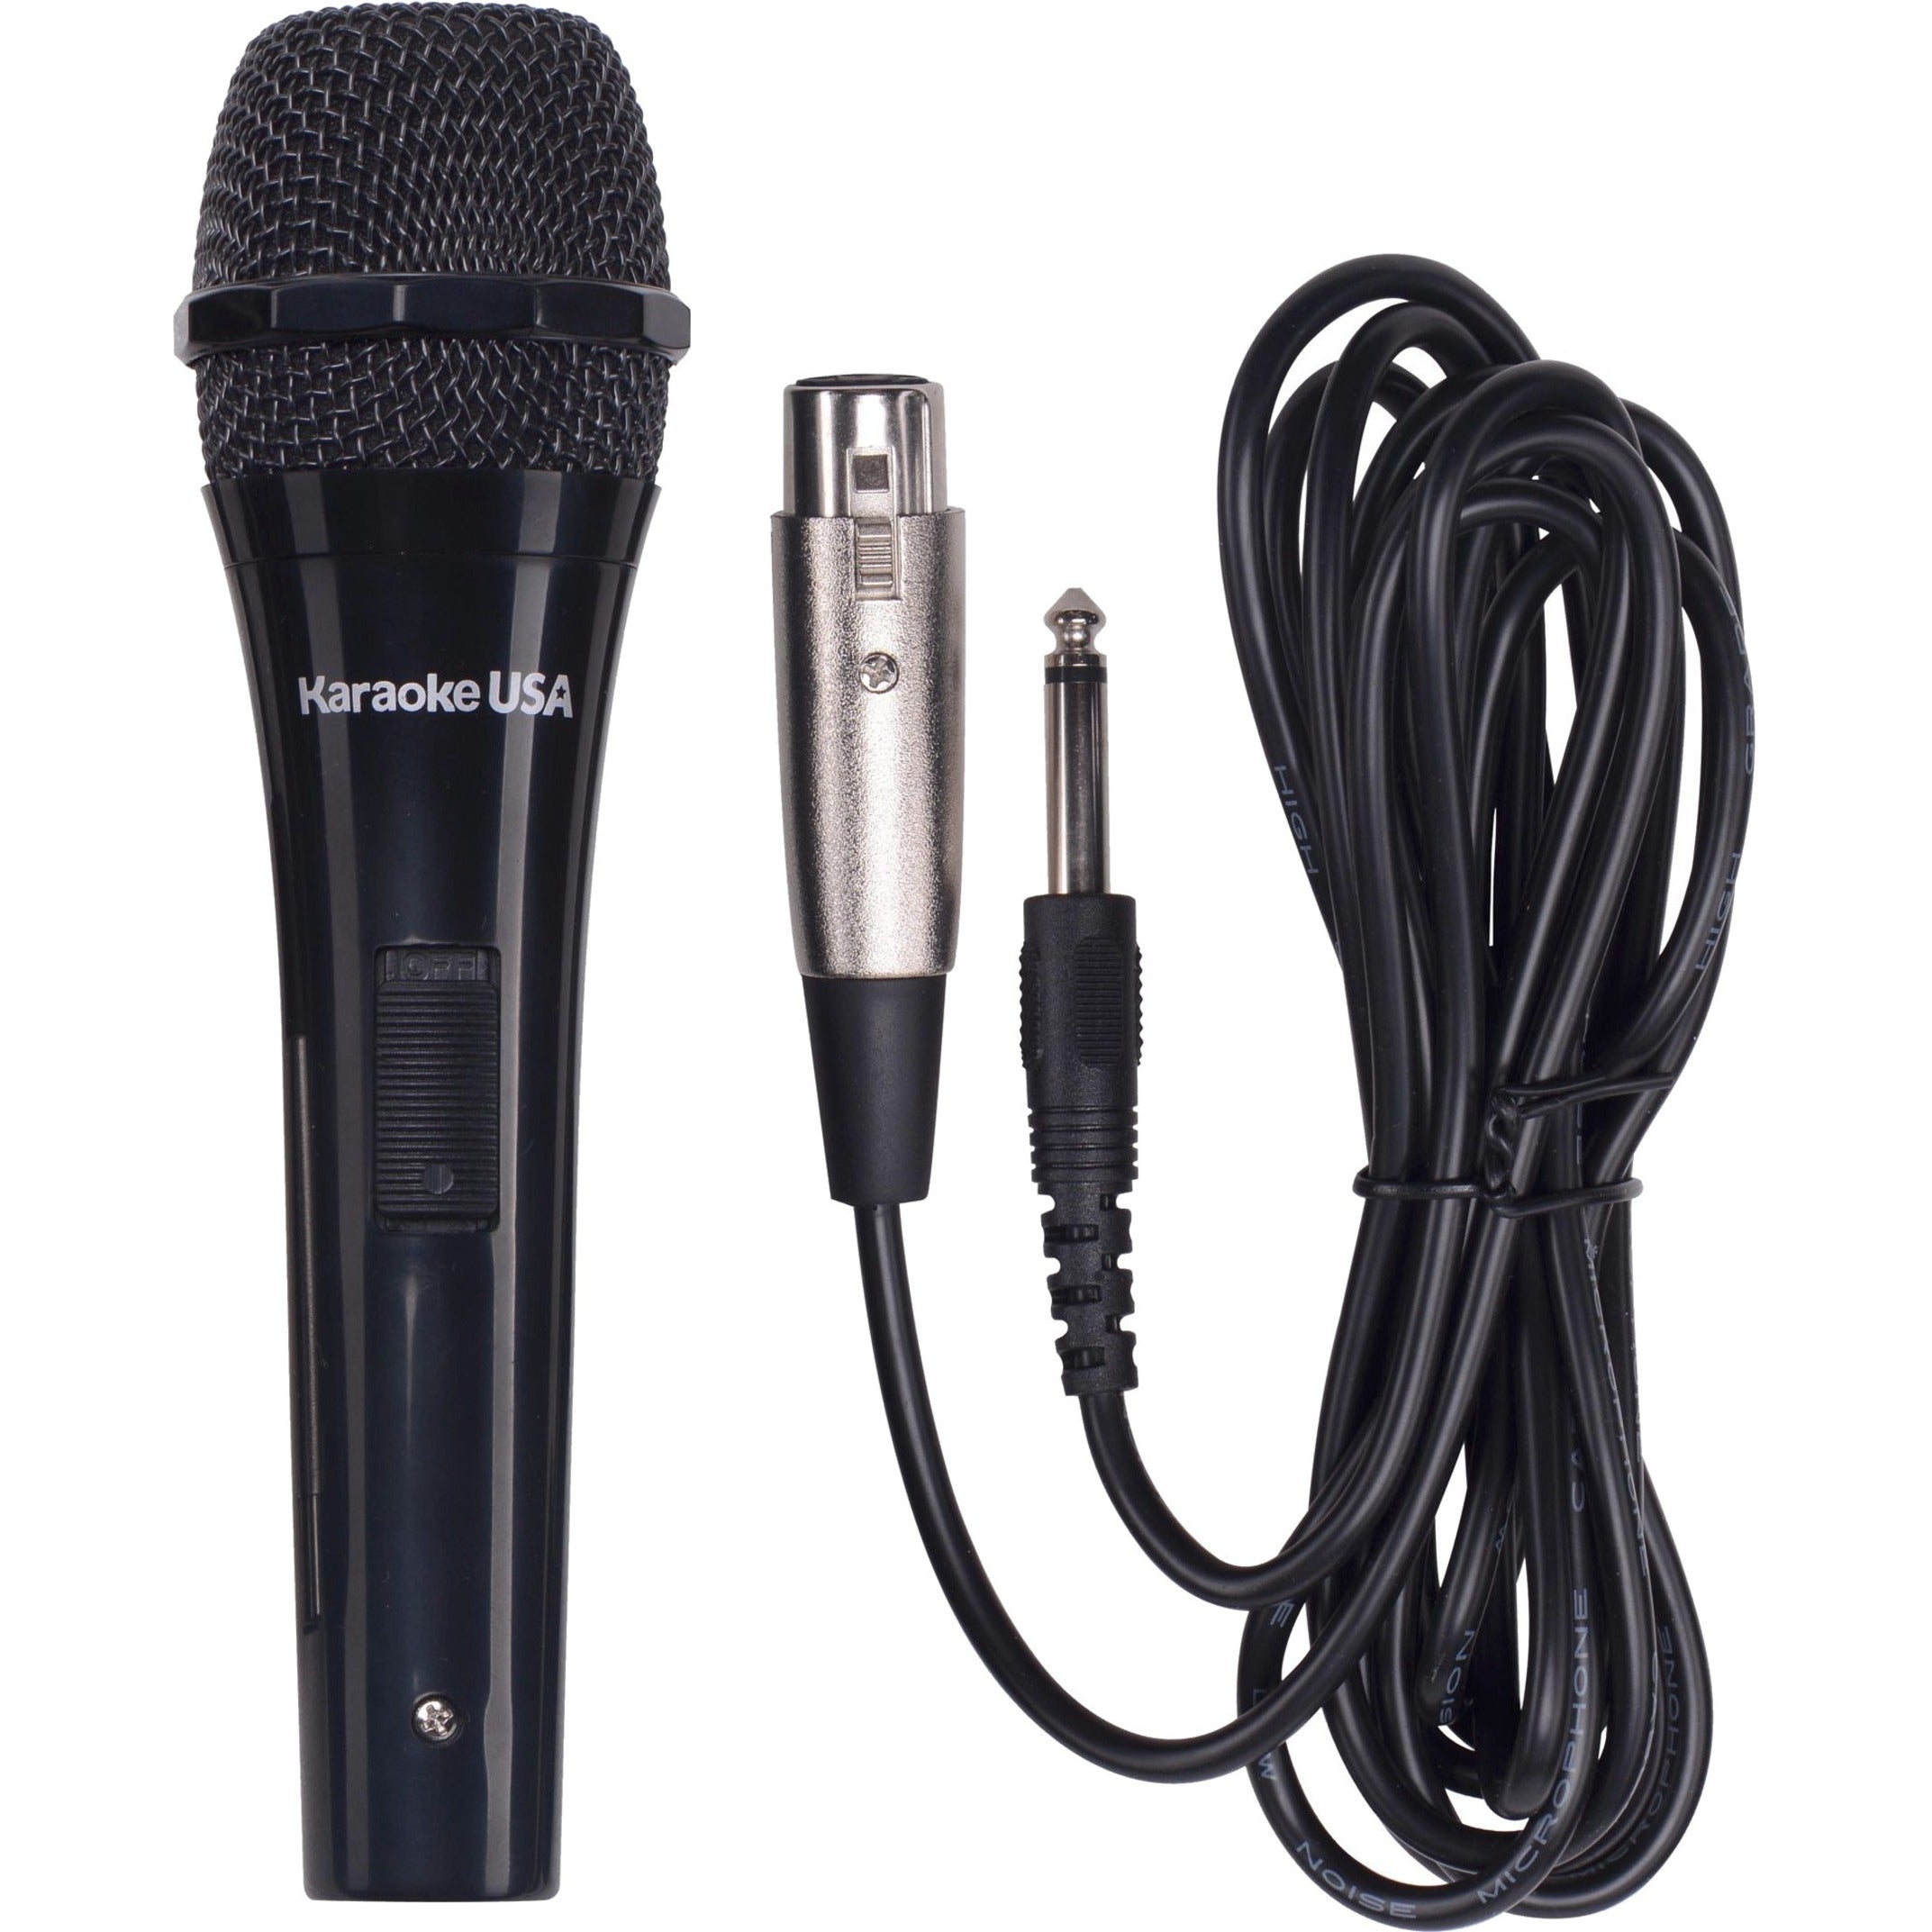 Karaoke USA M189 Professionelles Dynamisches Mikrofon (Abnehmbares Kabel) Verdrahtetes Nierenmikrofon für professionelle Audioanwendungen